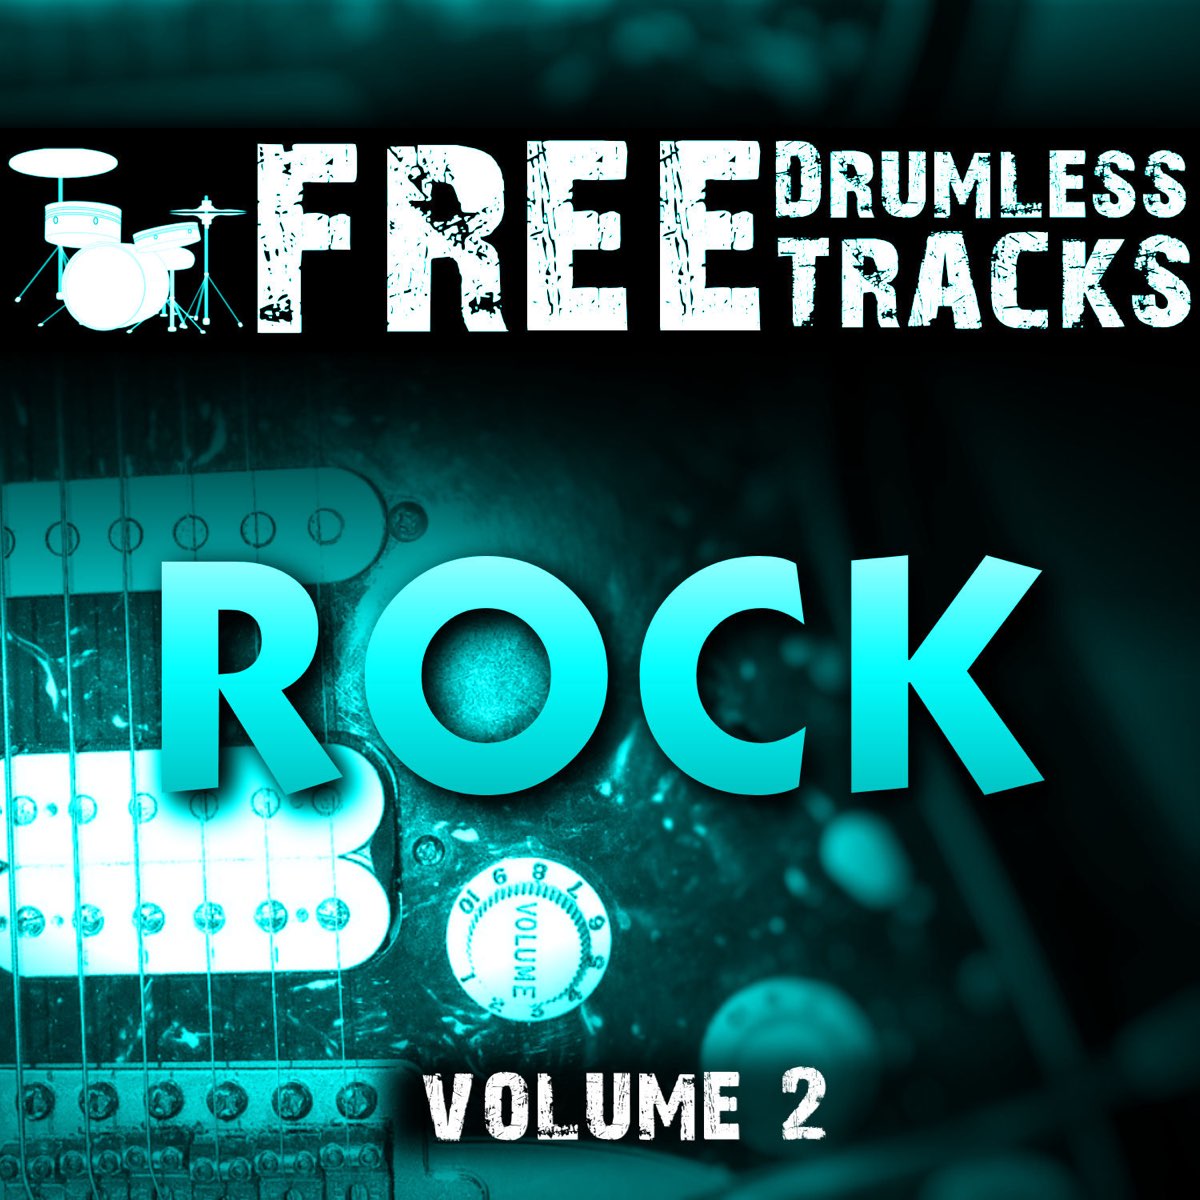 Track rock. Gross Rock Volume. FDT.